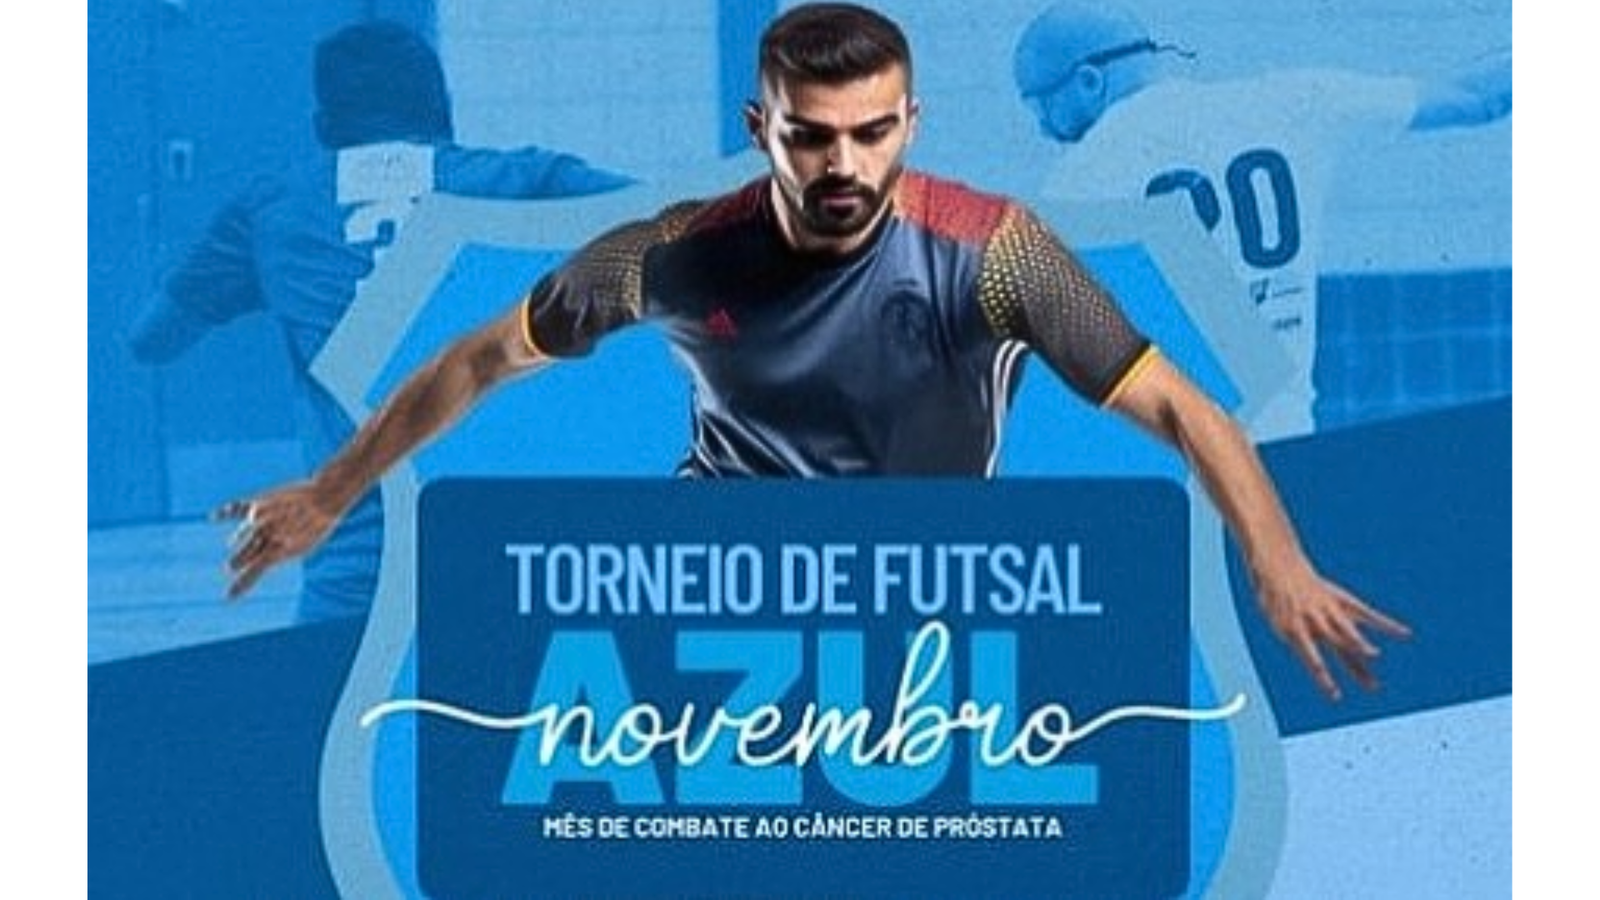 Acontece nesta manhã o Torneio de Futsal Novembro Azul em Riachuelo, além de um conjunto de atividades ligadas a saúde e bem-estar